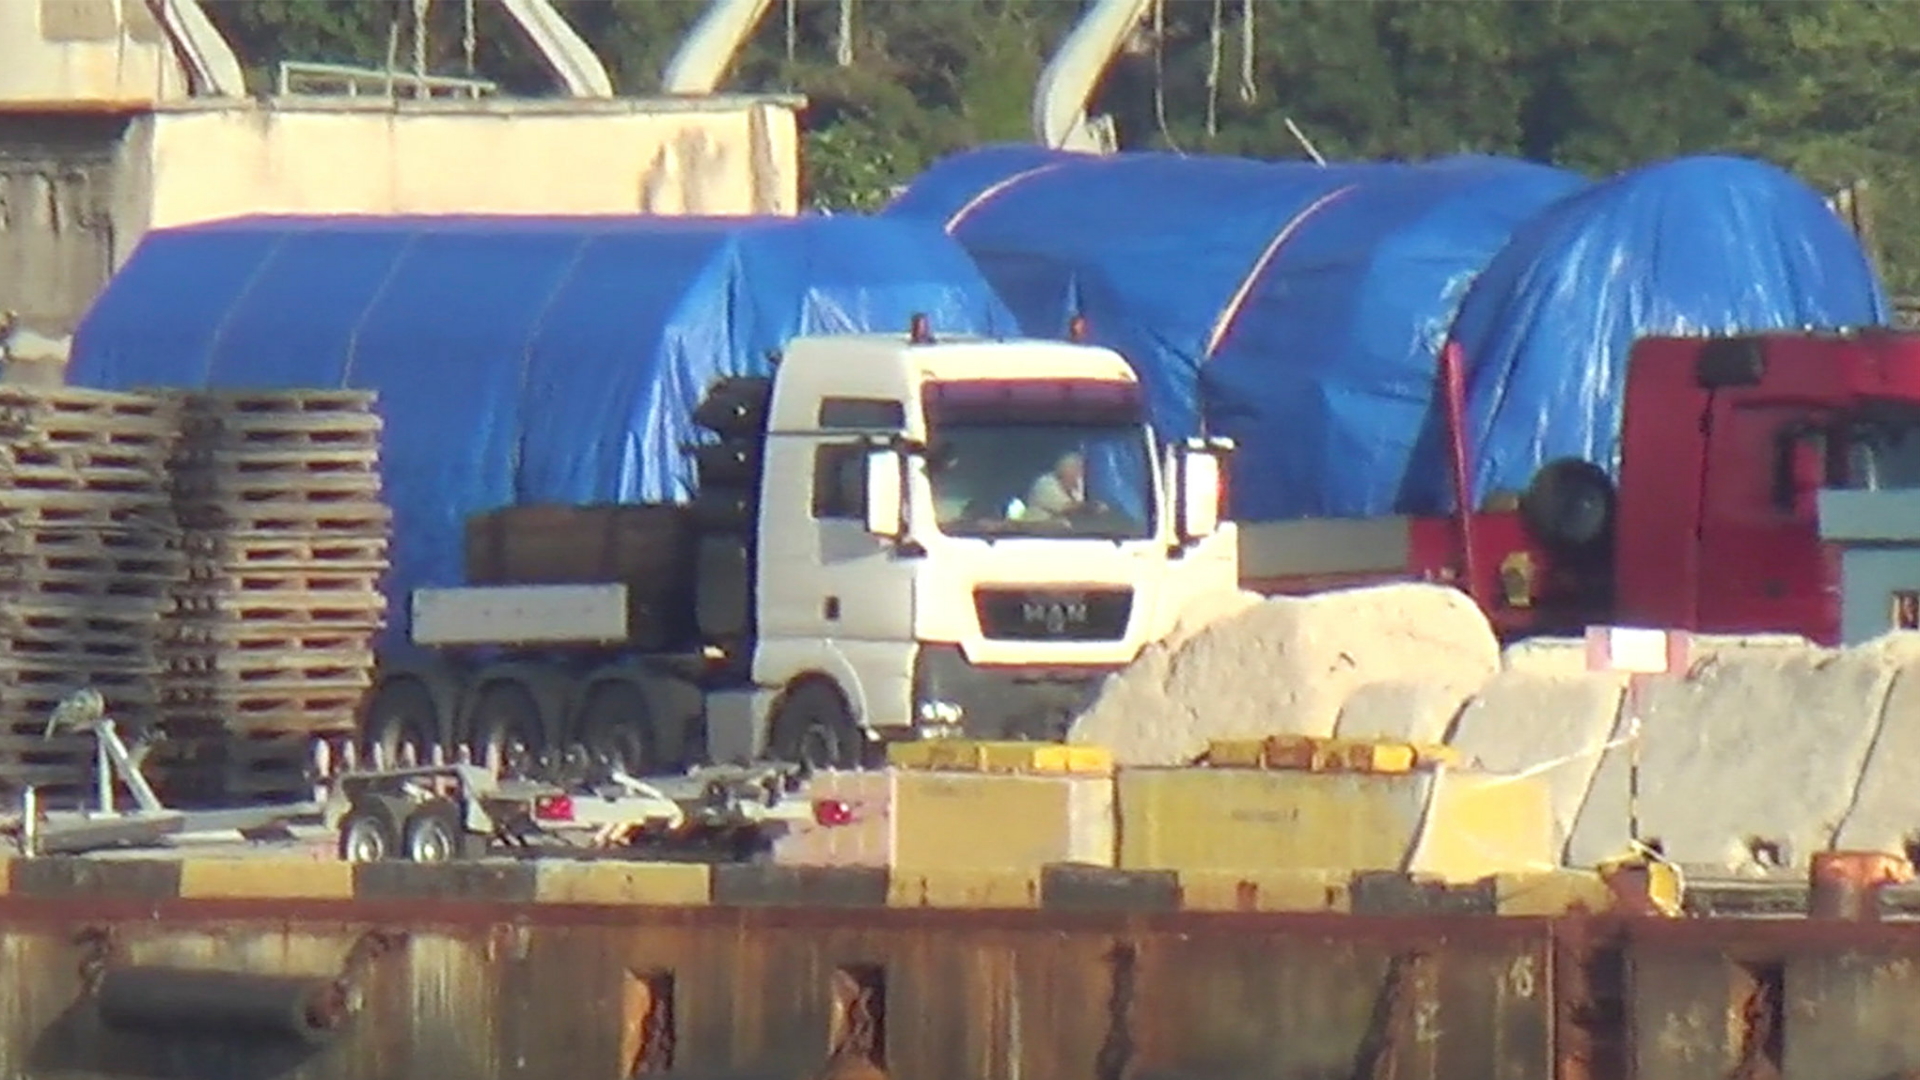 Lkw mit einer abgedeckten Großlieferung im Hafen von Feodosia am 11. Juli - mutmaßlich handelte es sich dabei um die Siemens-Gasturbinen, die rechtswidrig auf die Krim gebracht wurden.